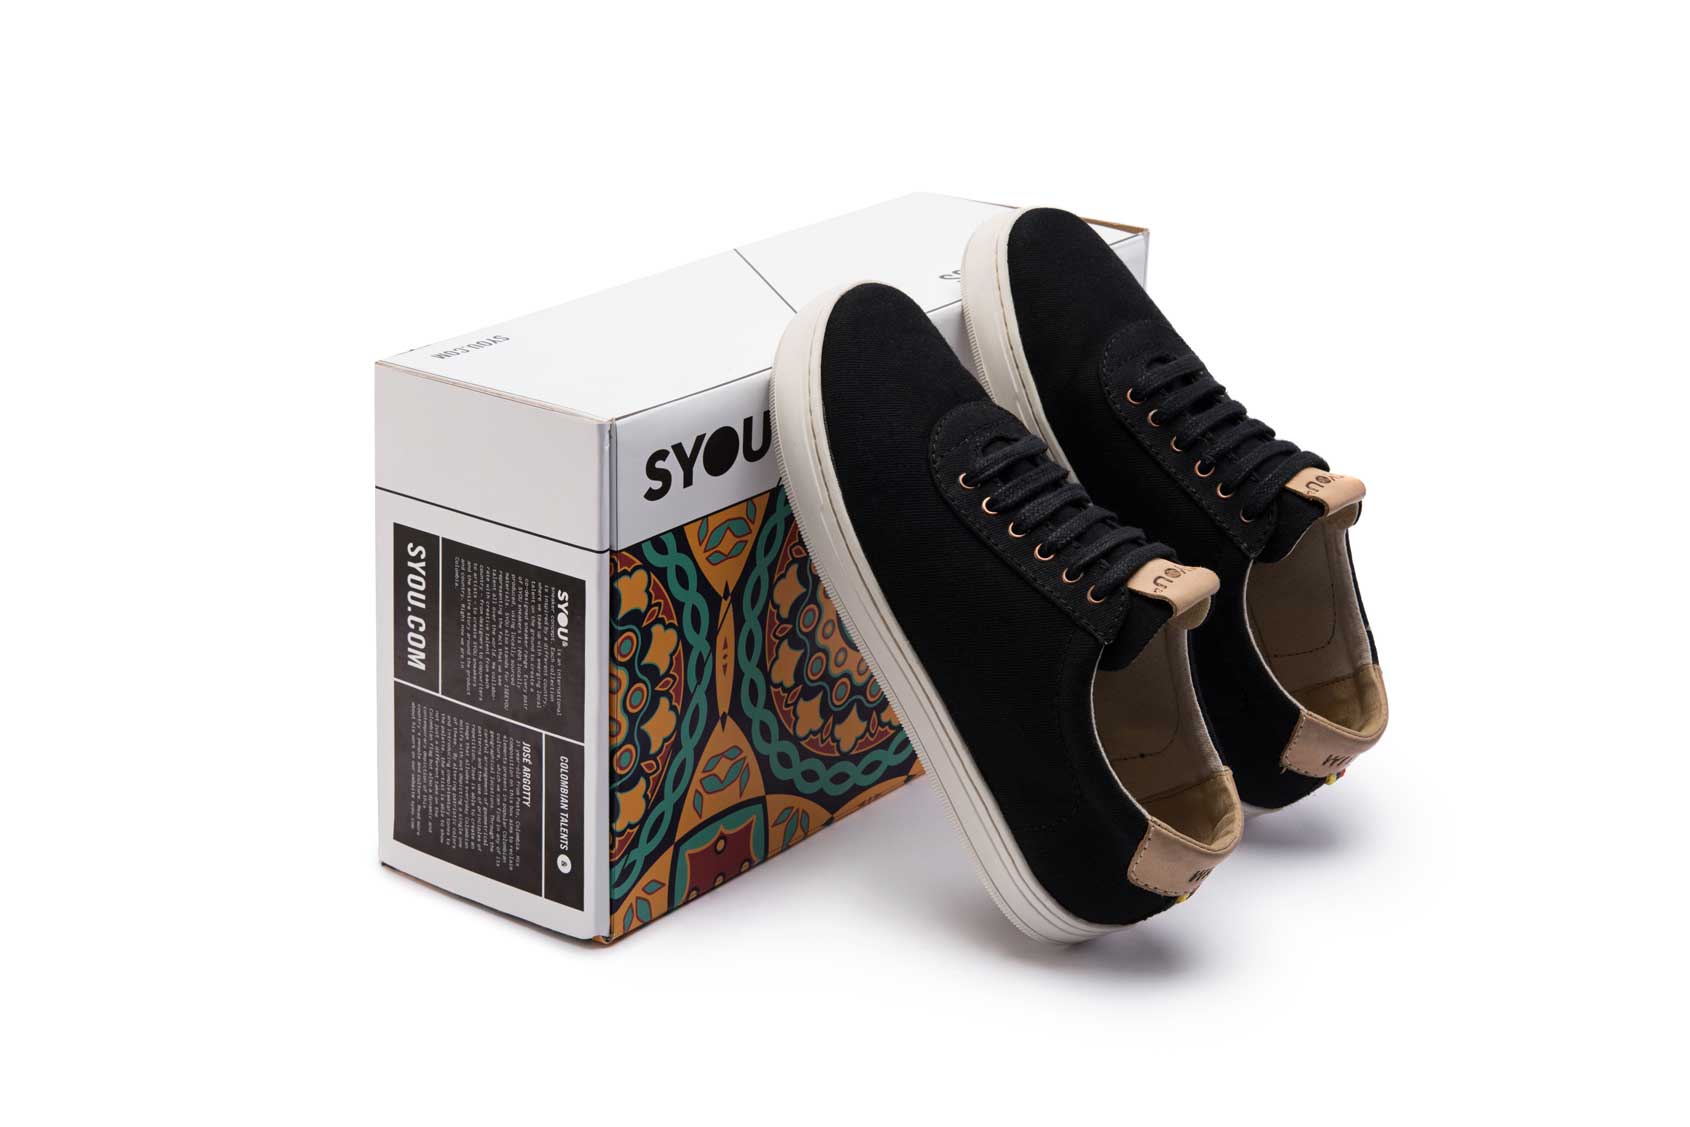 Co3 black syou shoe box